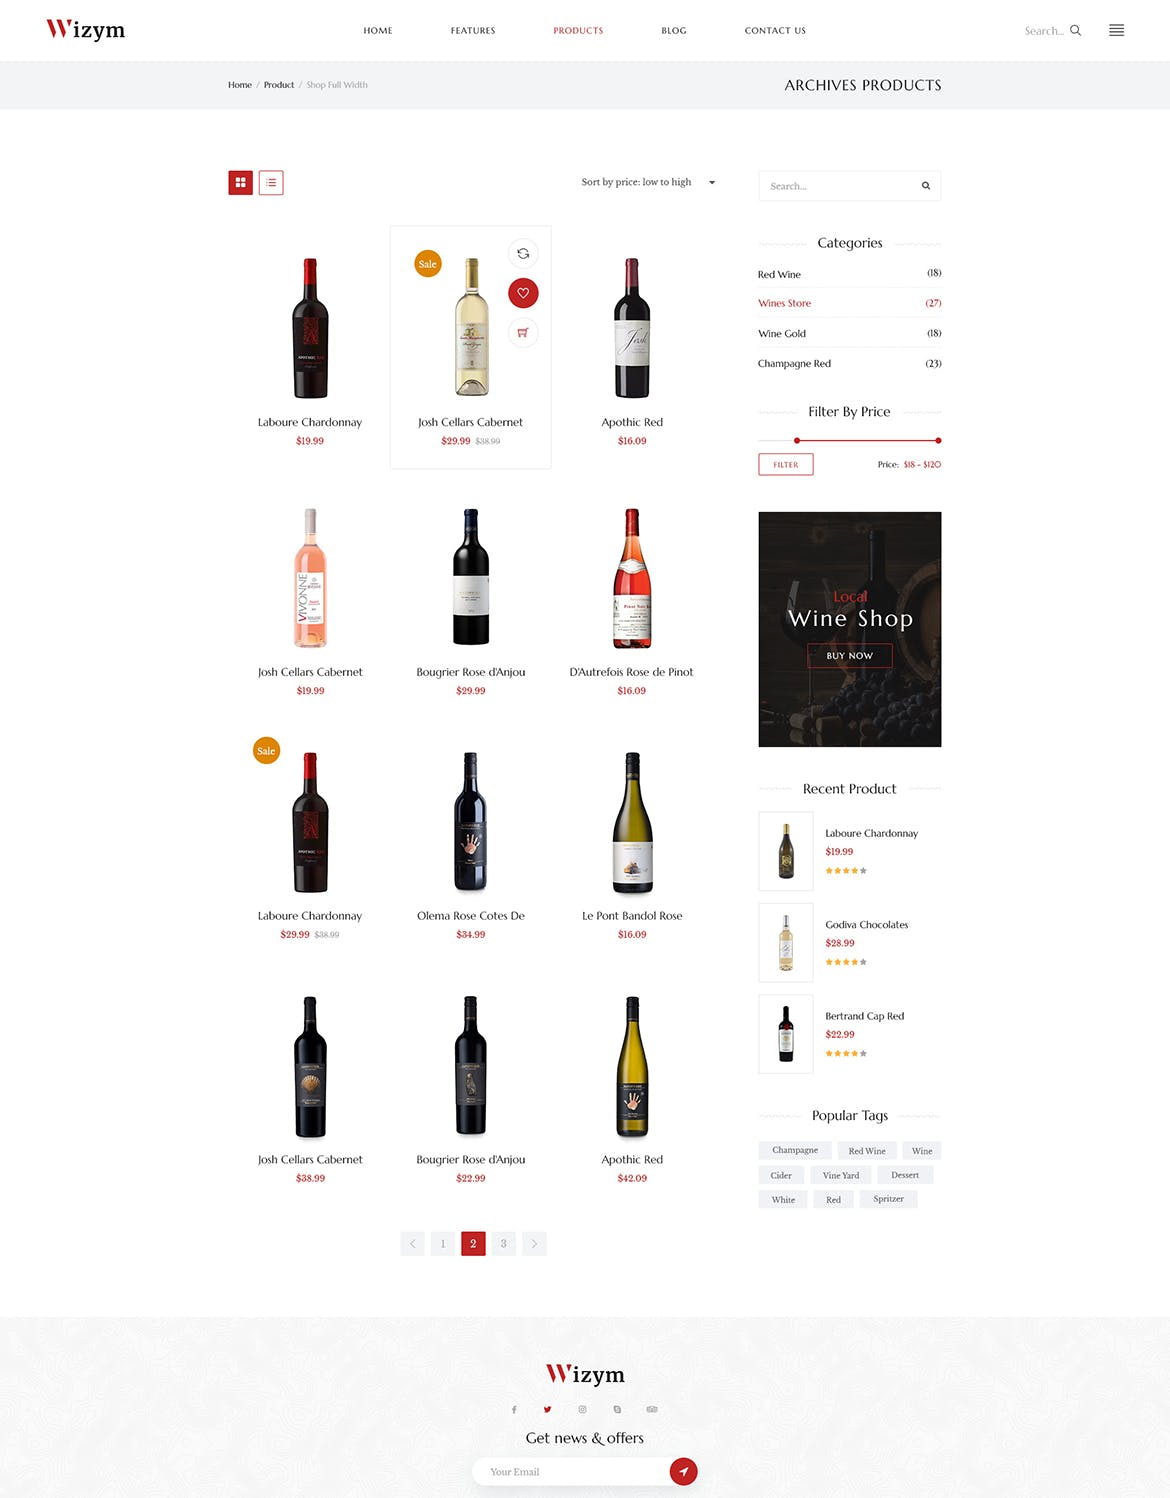 葡萄酒品牌网站设计PSD模板 Wizym | Wine & Winery PSD Template插图(5)